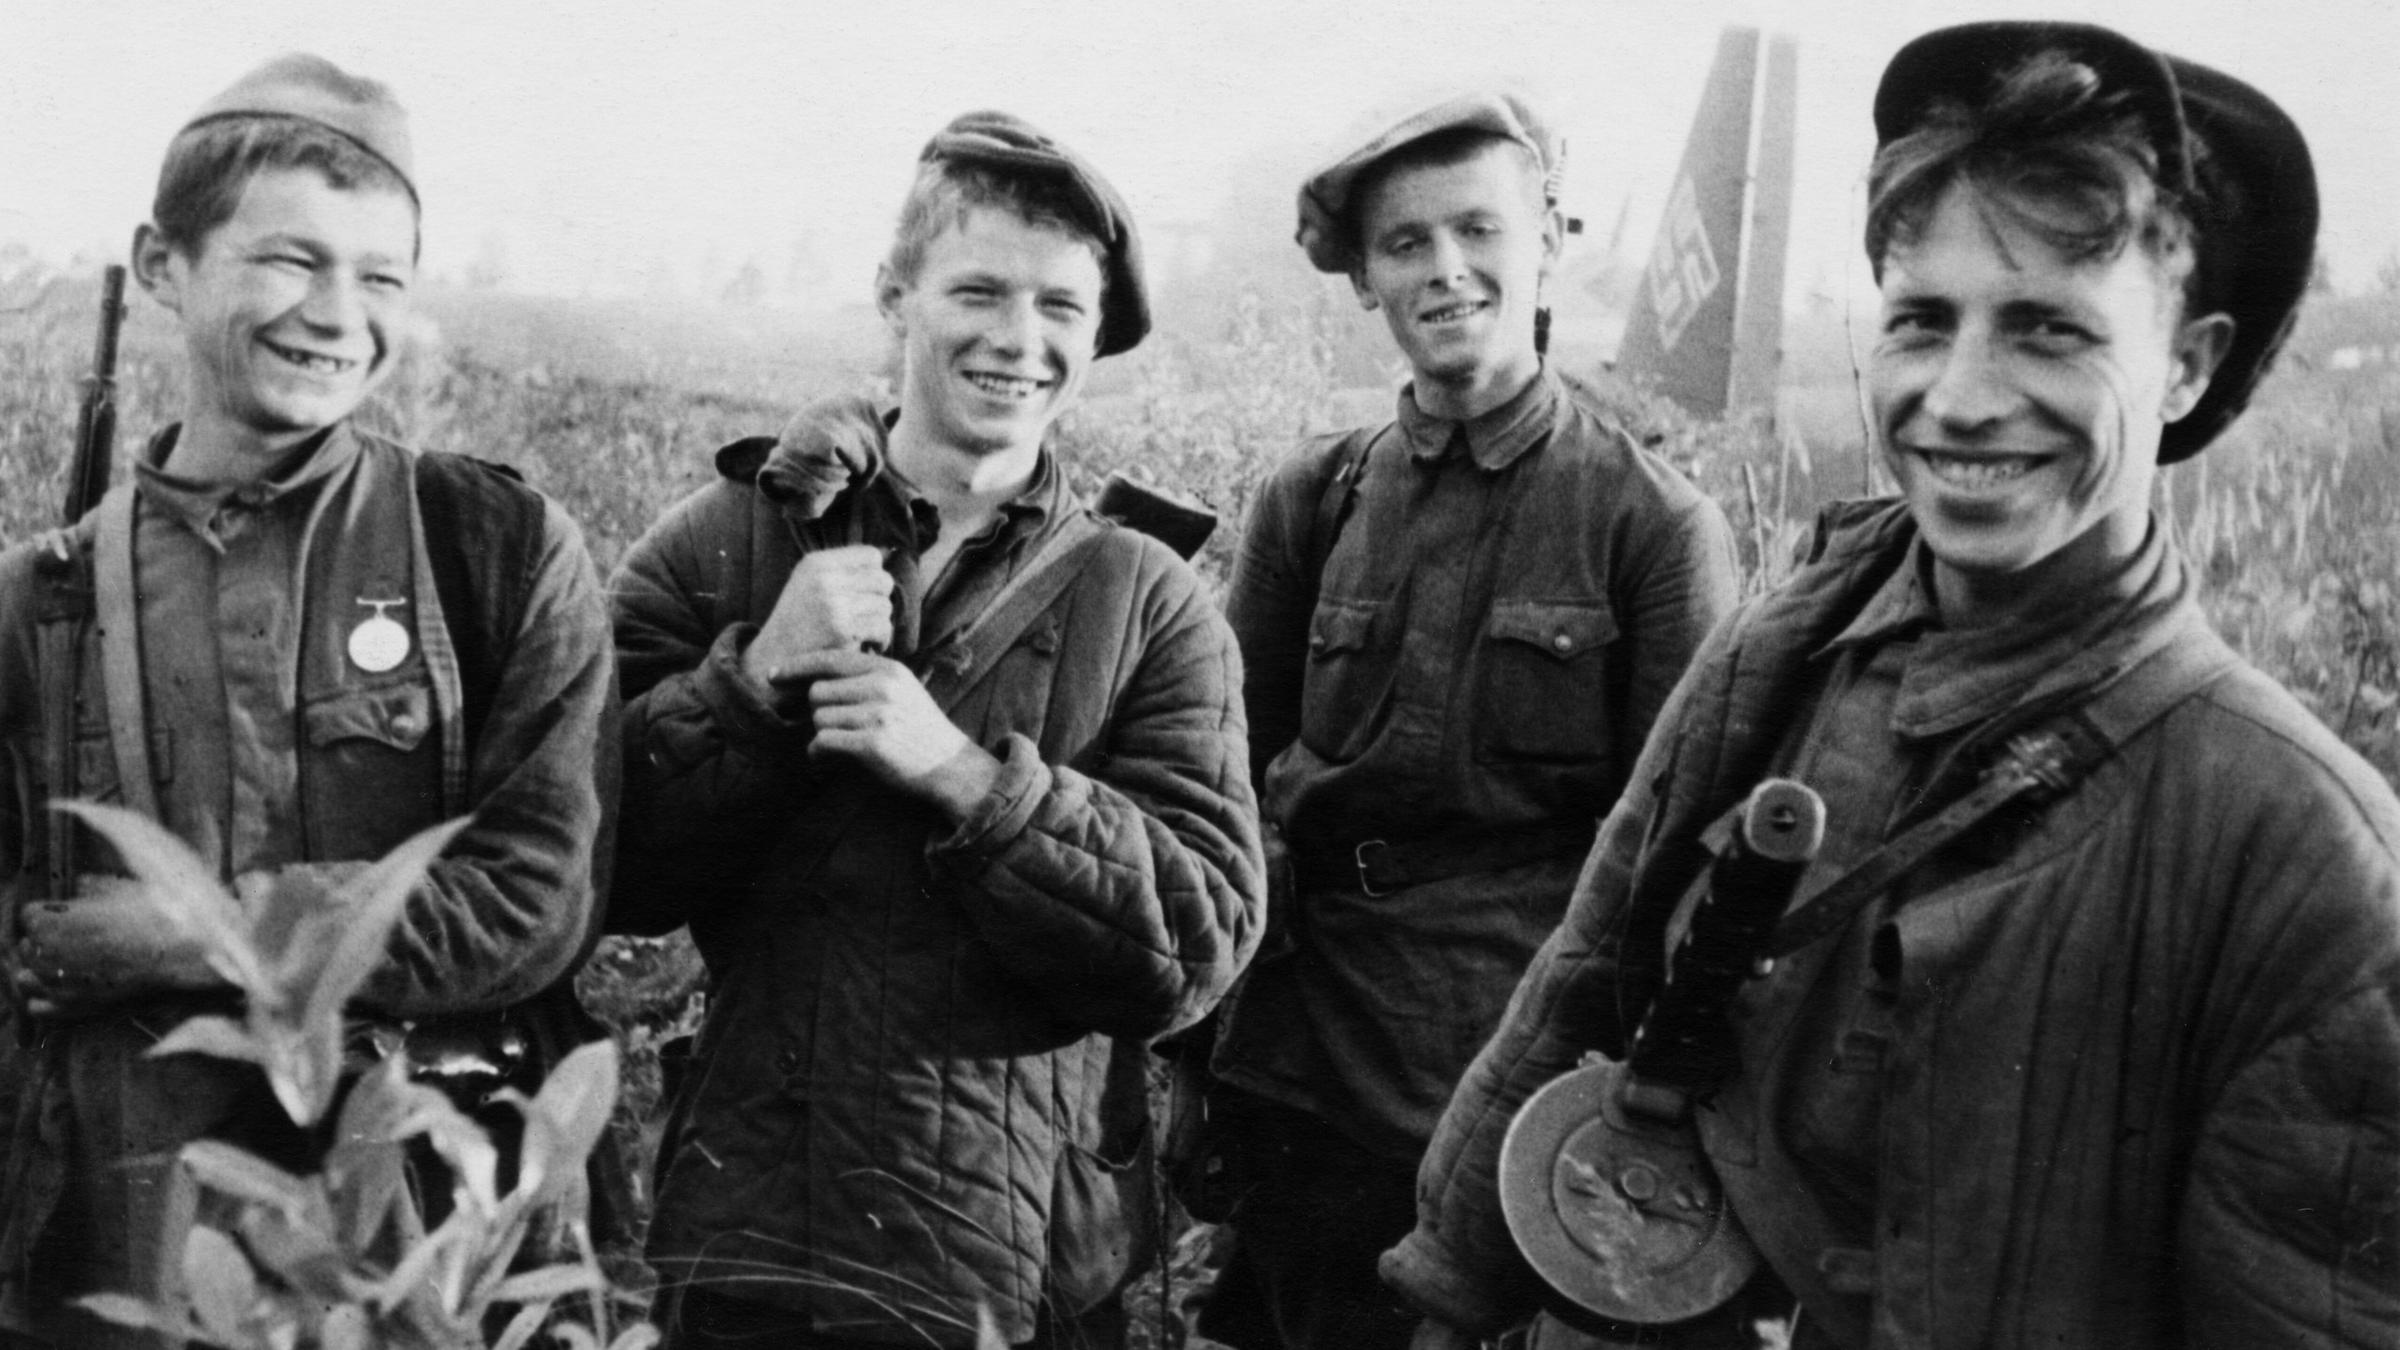 Vier junge Partisanen, die gerade ein deutsches Transportflugzeug in Brand gesetzt haben während des 2. Weltkriegs.